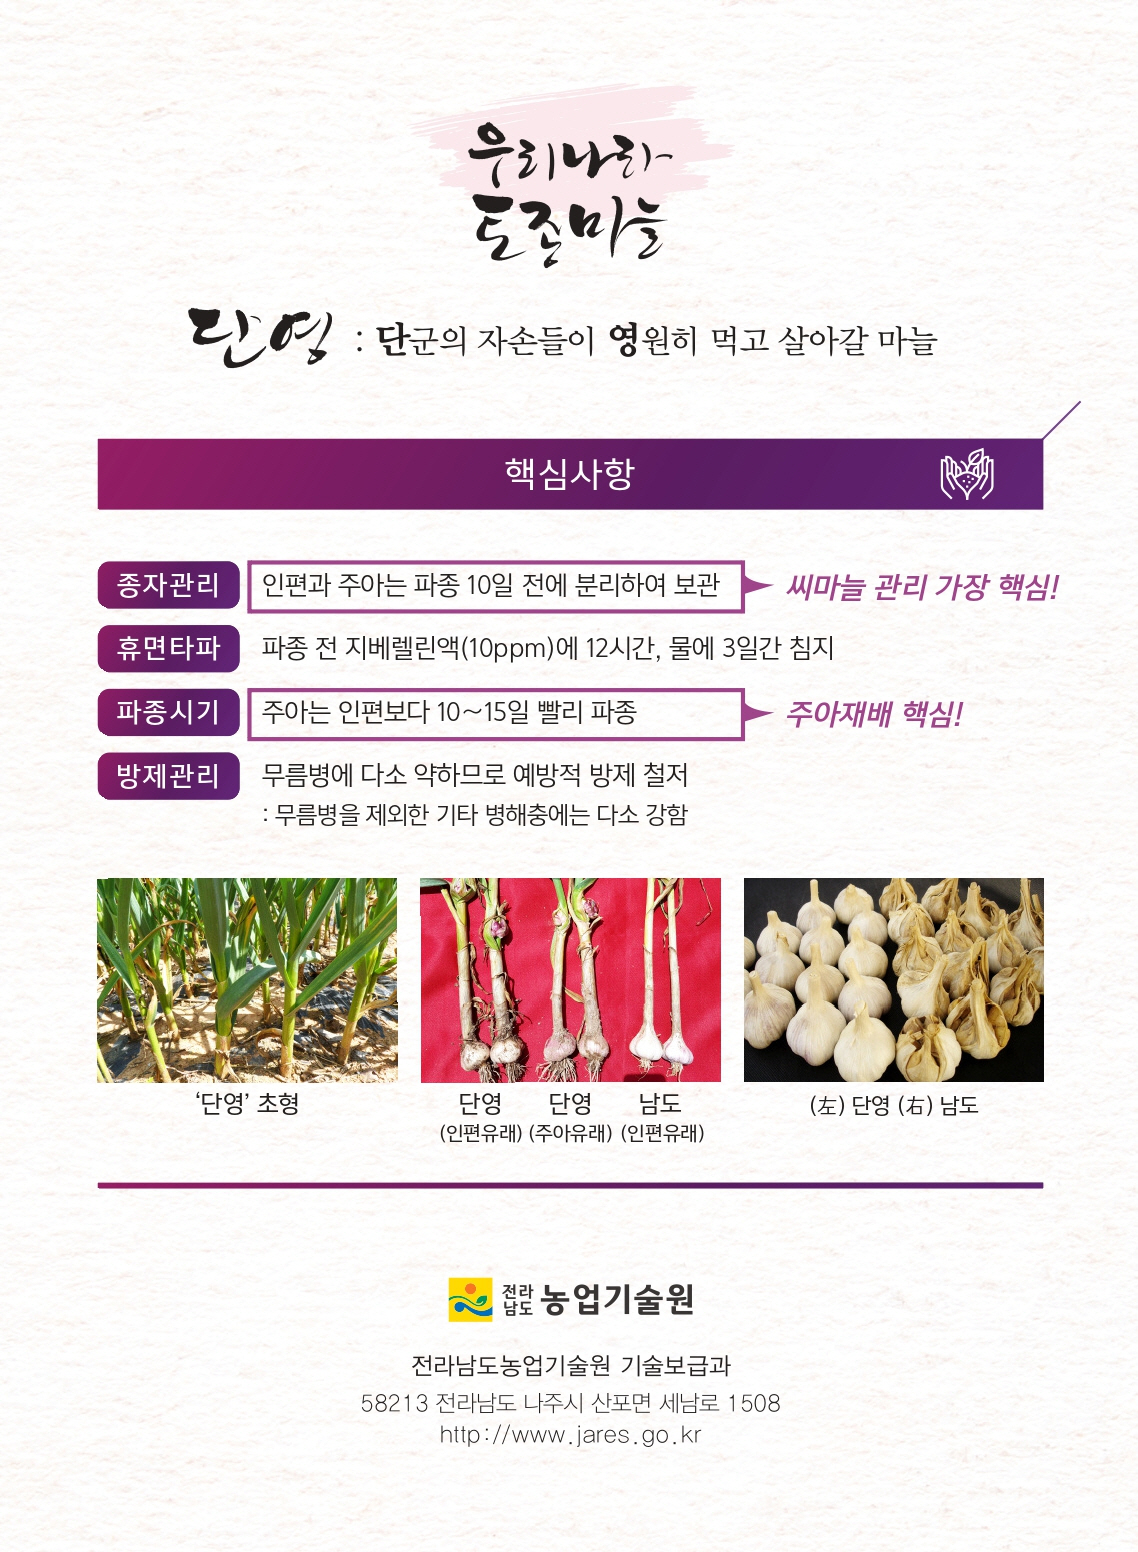 마늘 제초제 안전사용 방법 및 단영마늘 소개 첨부#5